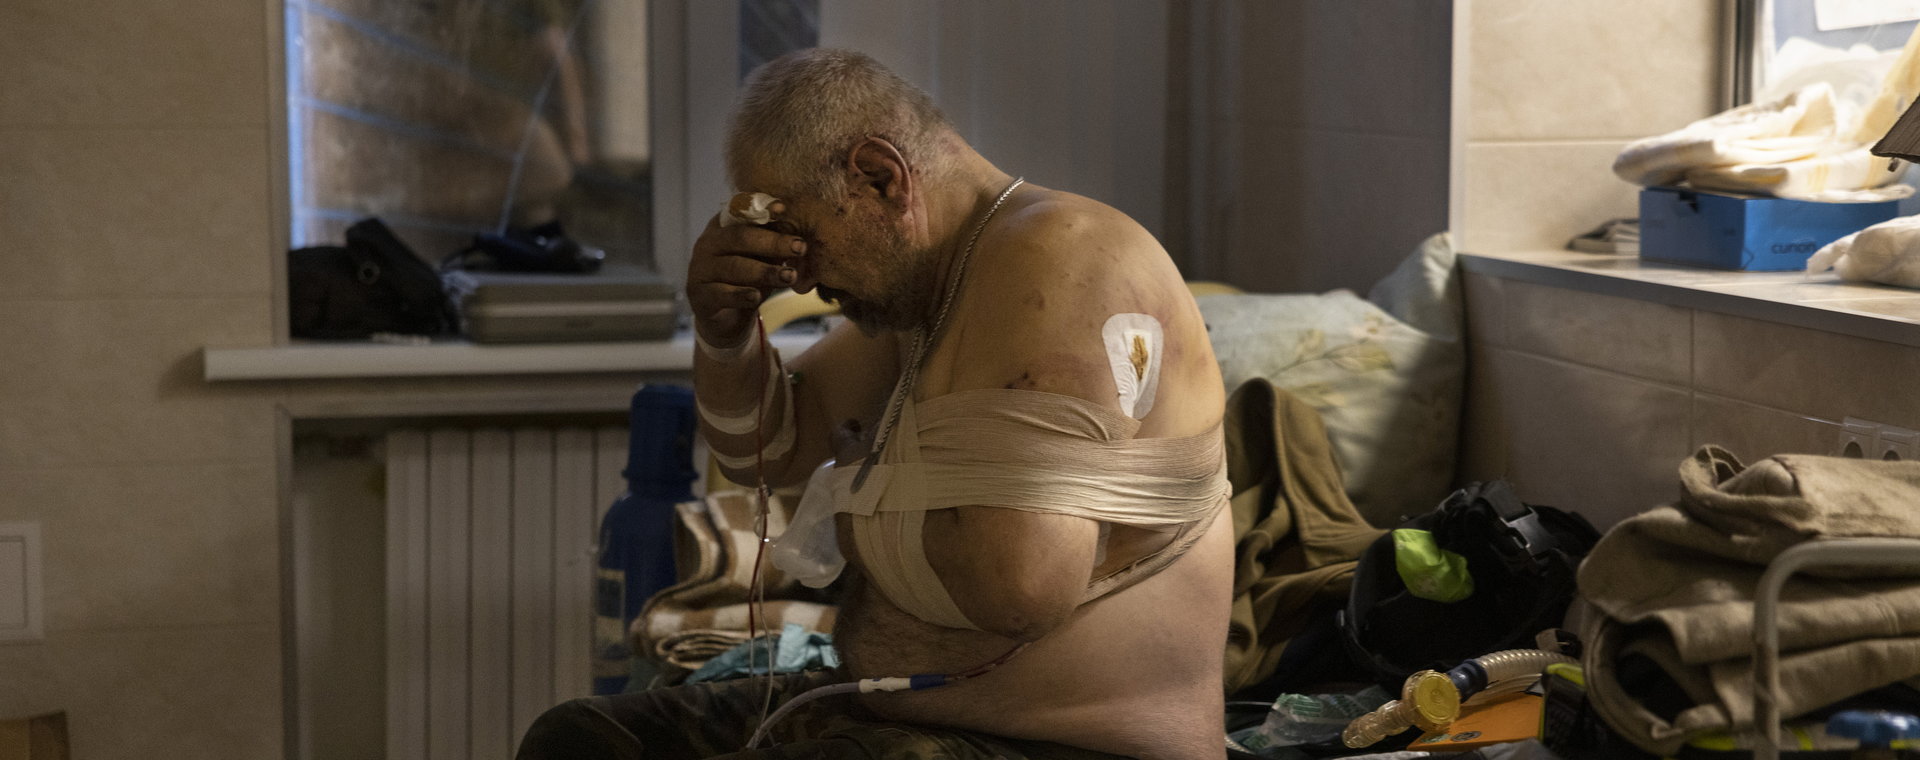 Żołnierz Siergiej, lat 62, czeka na leczenie obrażeń ręki i klatki piersiowej w izbie przyjęć po wybuchu miny przeciwpancernej w pobliżu jego pojazdu, 7 października 2022 r., obwód doniecki, Ukraina